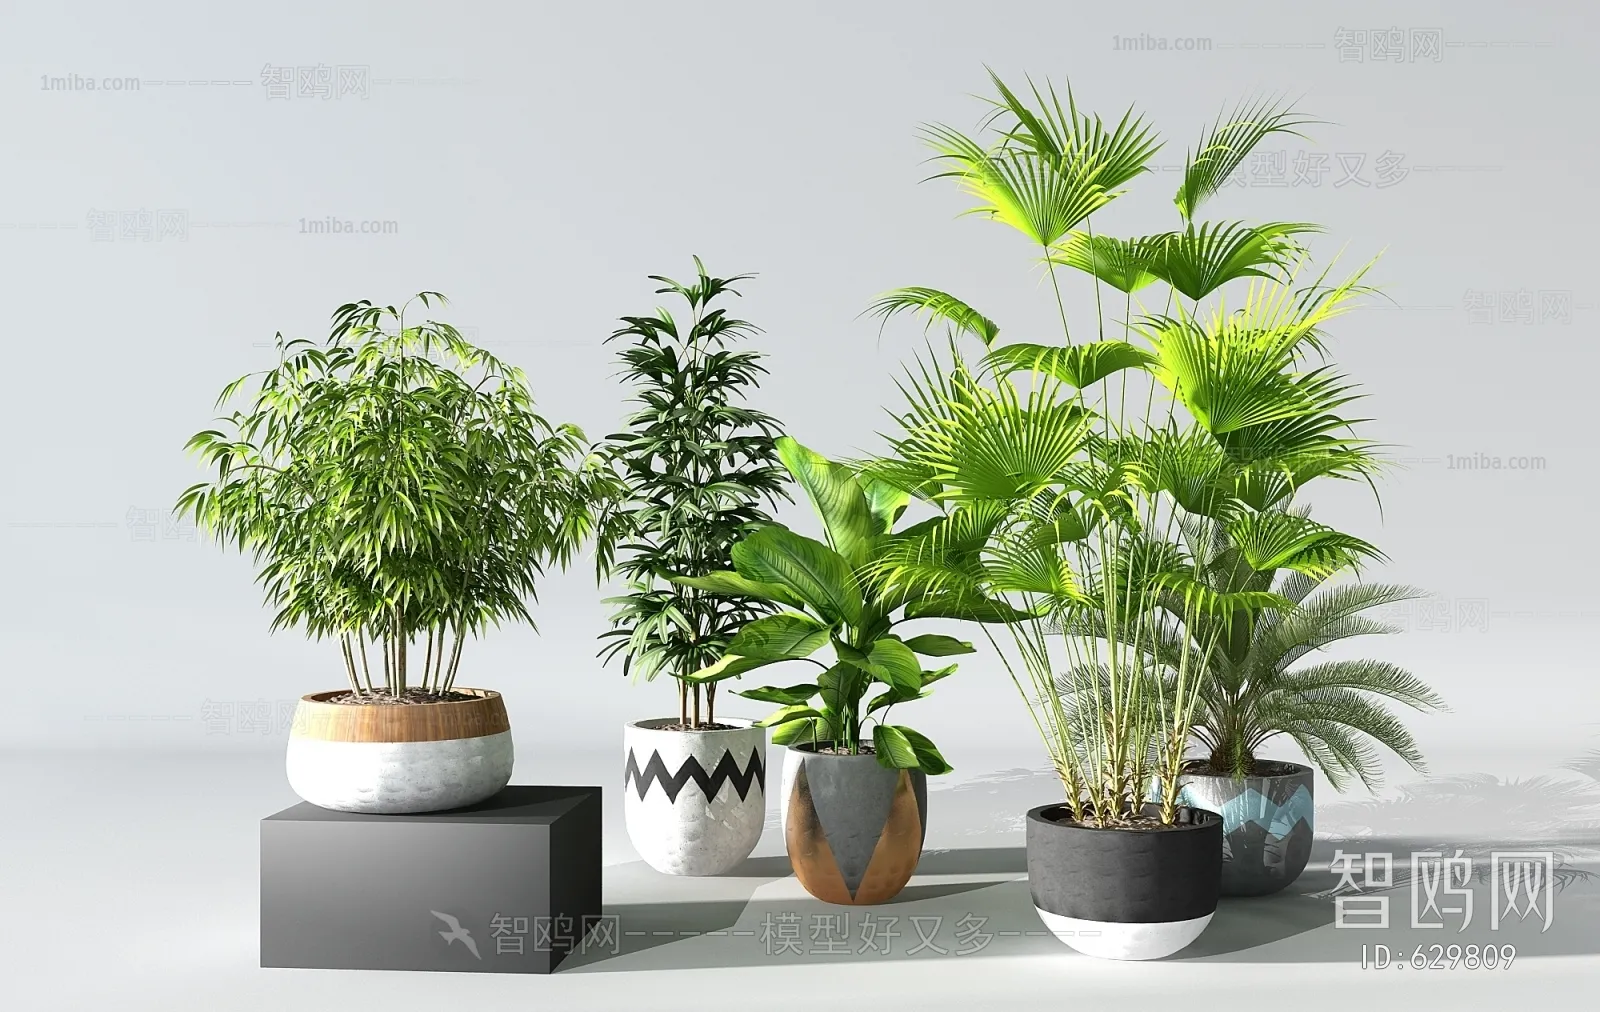 PLANT 3D MODELS – 033